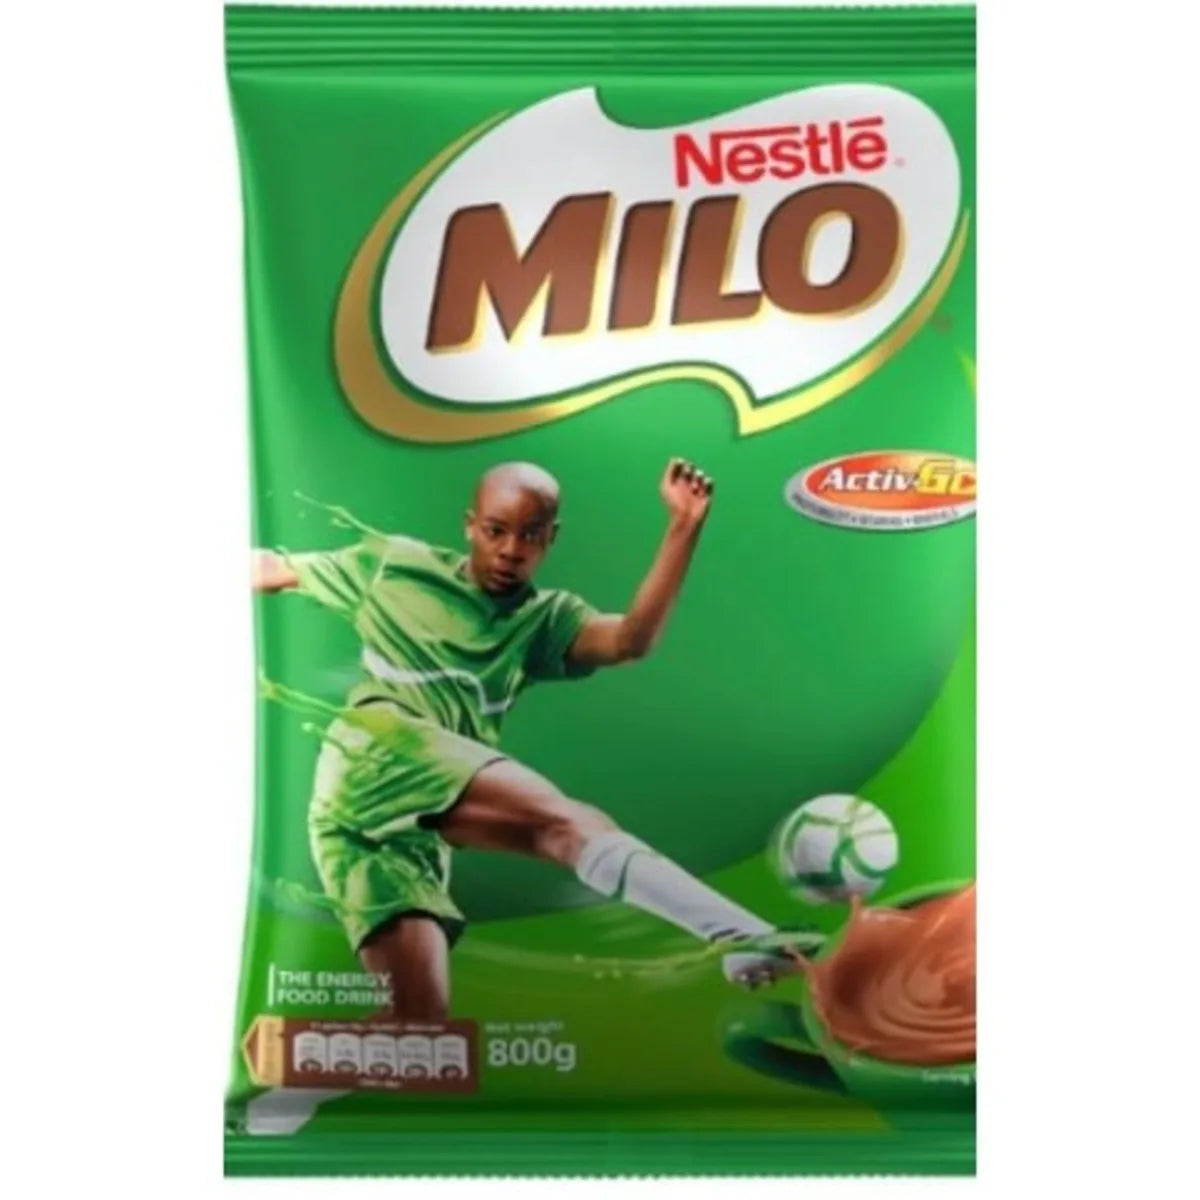 Nestle Milo Cocoa Sachet 800g